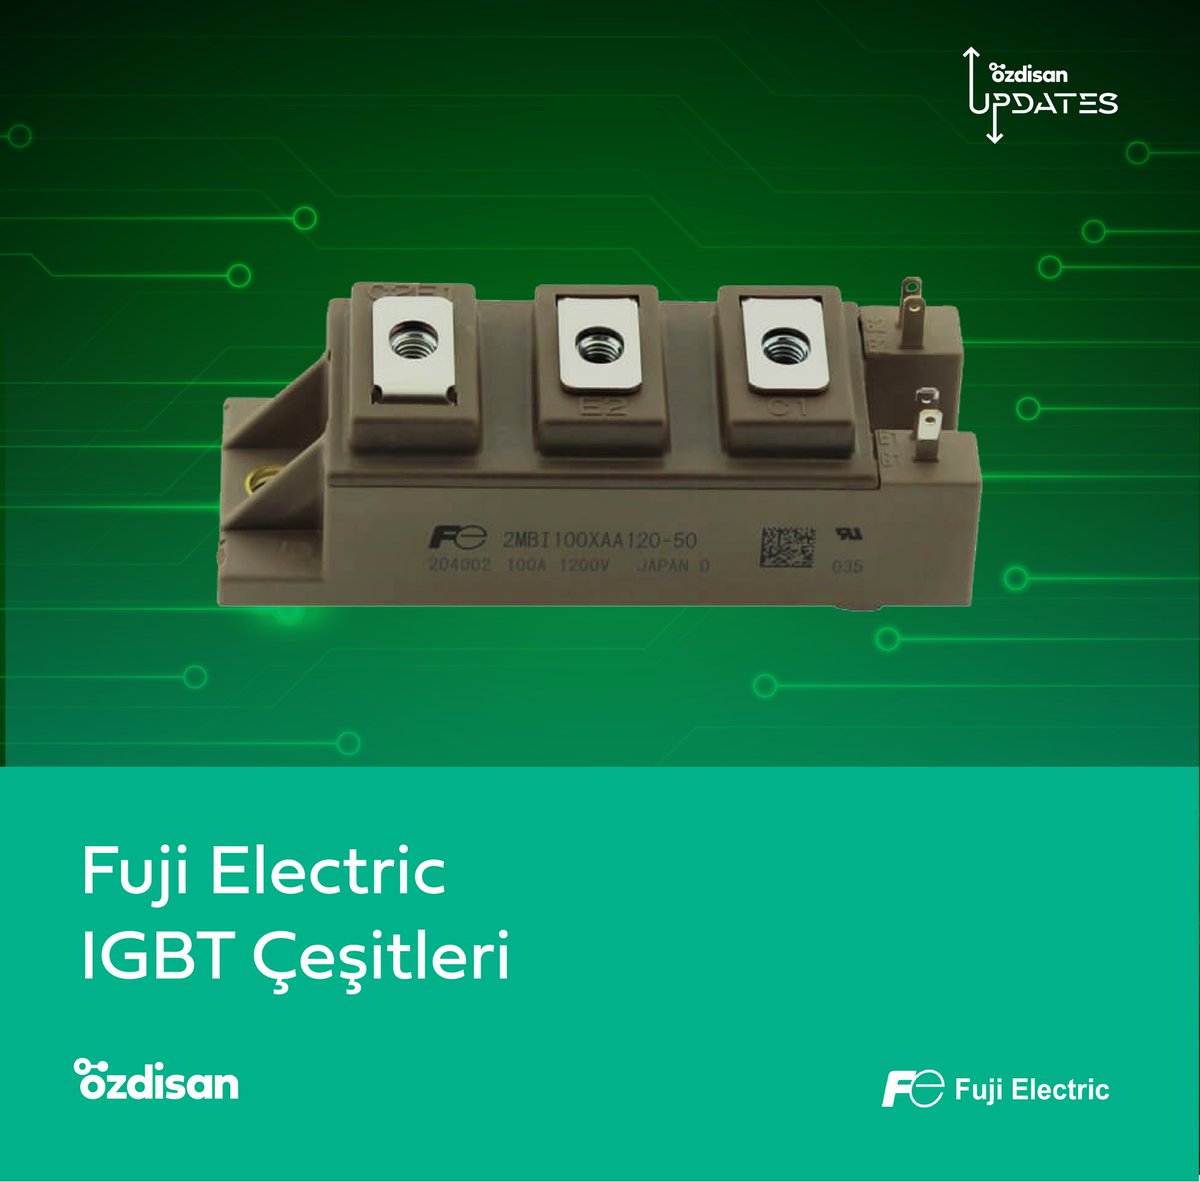 Güç yarı iletkenleri konusunda MOSFET, IGBT, güç modülleri, diyotlar gibi çeşitli bileşenleri bulunan şirketin ürünlerini birlikte keşfedelim. 🔍 👀

👉🏻 componentbyozdisan.com/fuji-electric-…

#Özdisan #FujiElectric #igbt #powermodules